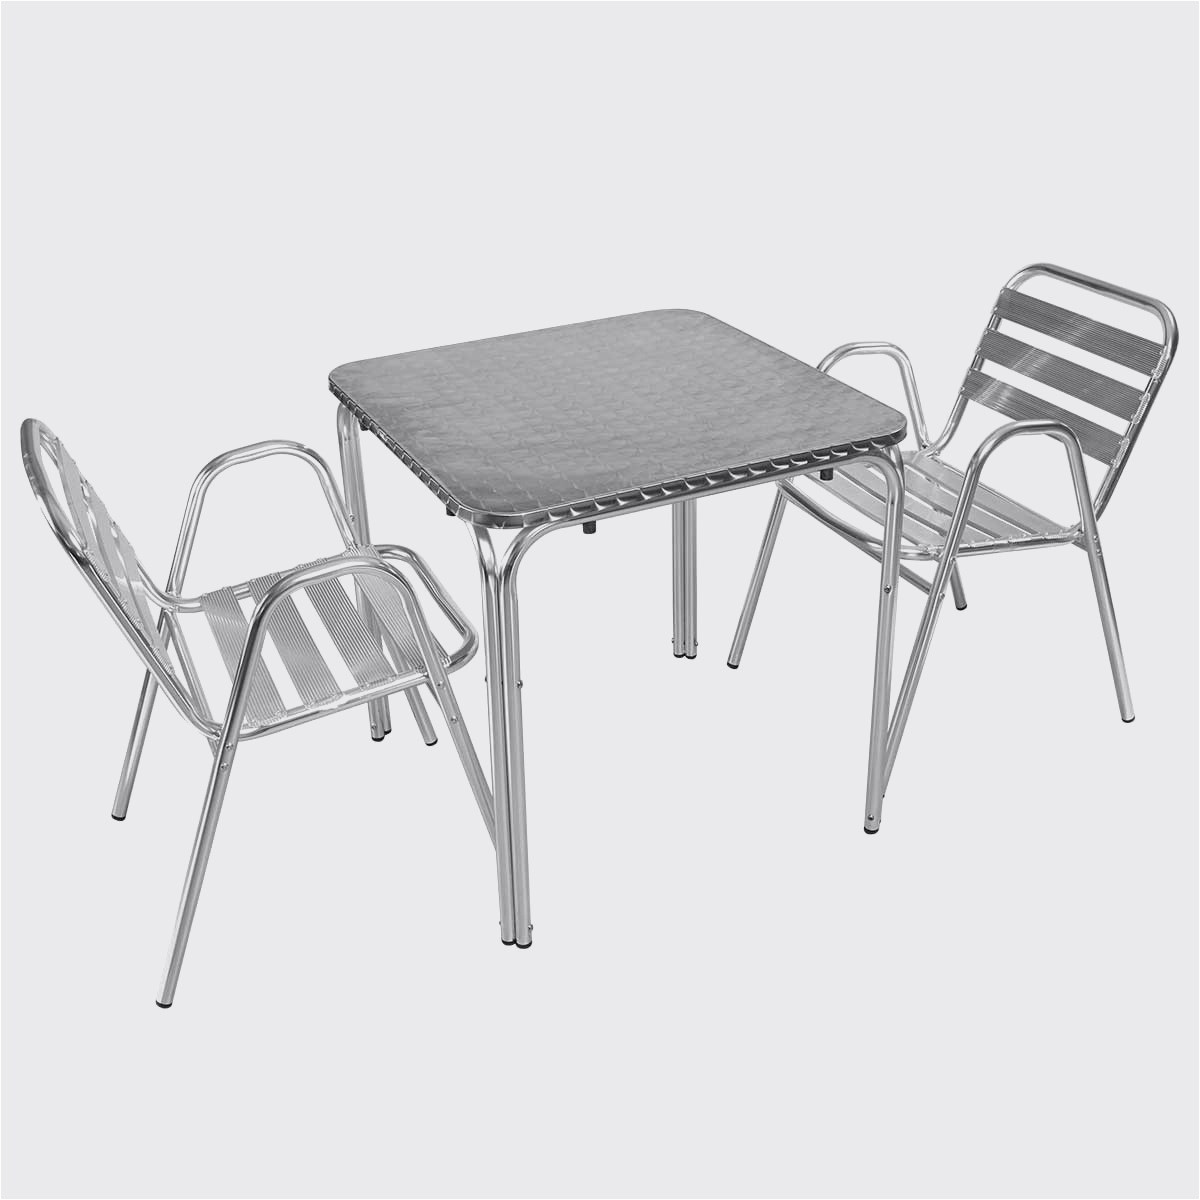 chaise pour table ronde frais table chaise terrasse chaise de terrasse inspirant table et chaises of chaise pour table ronde